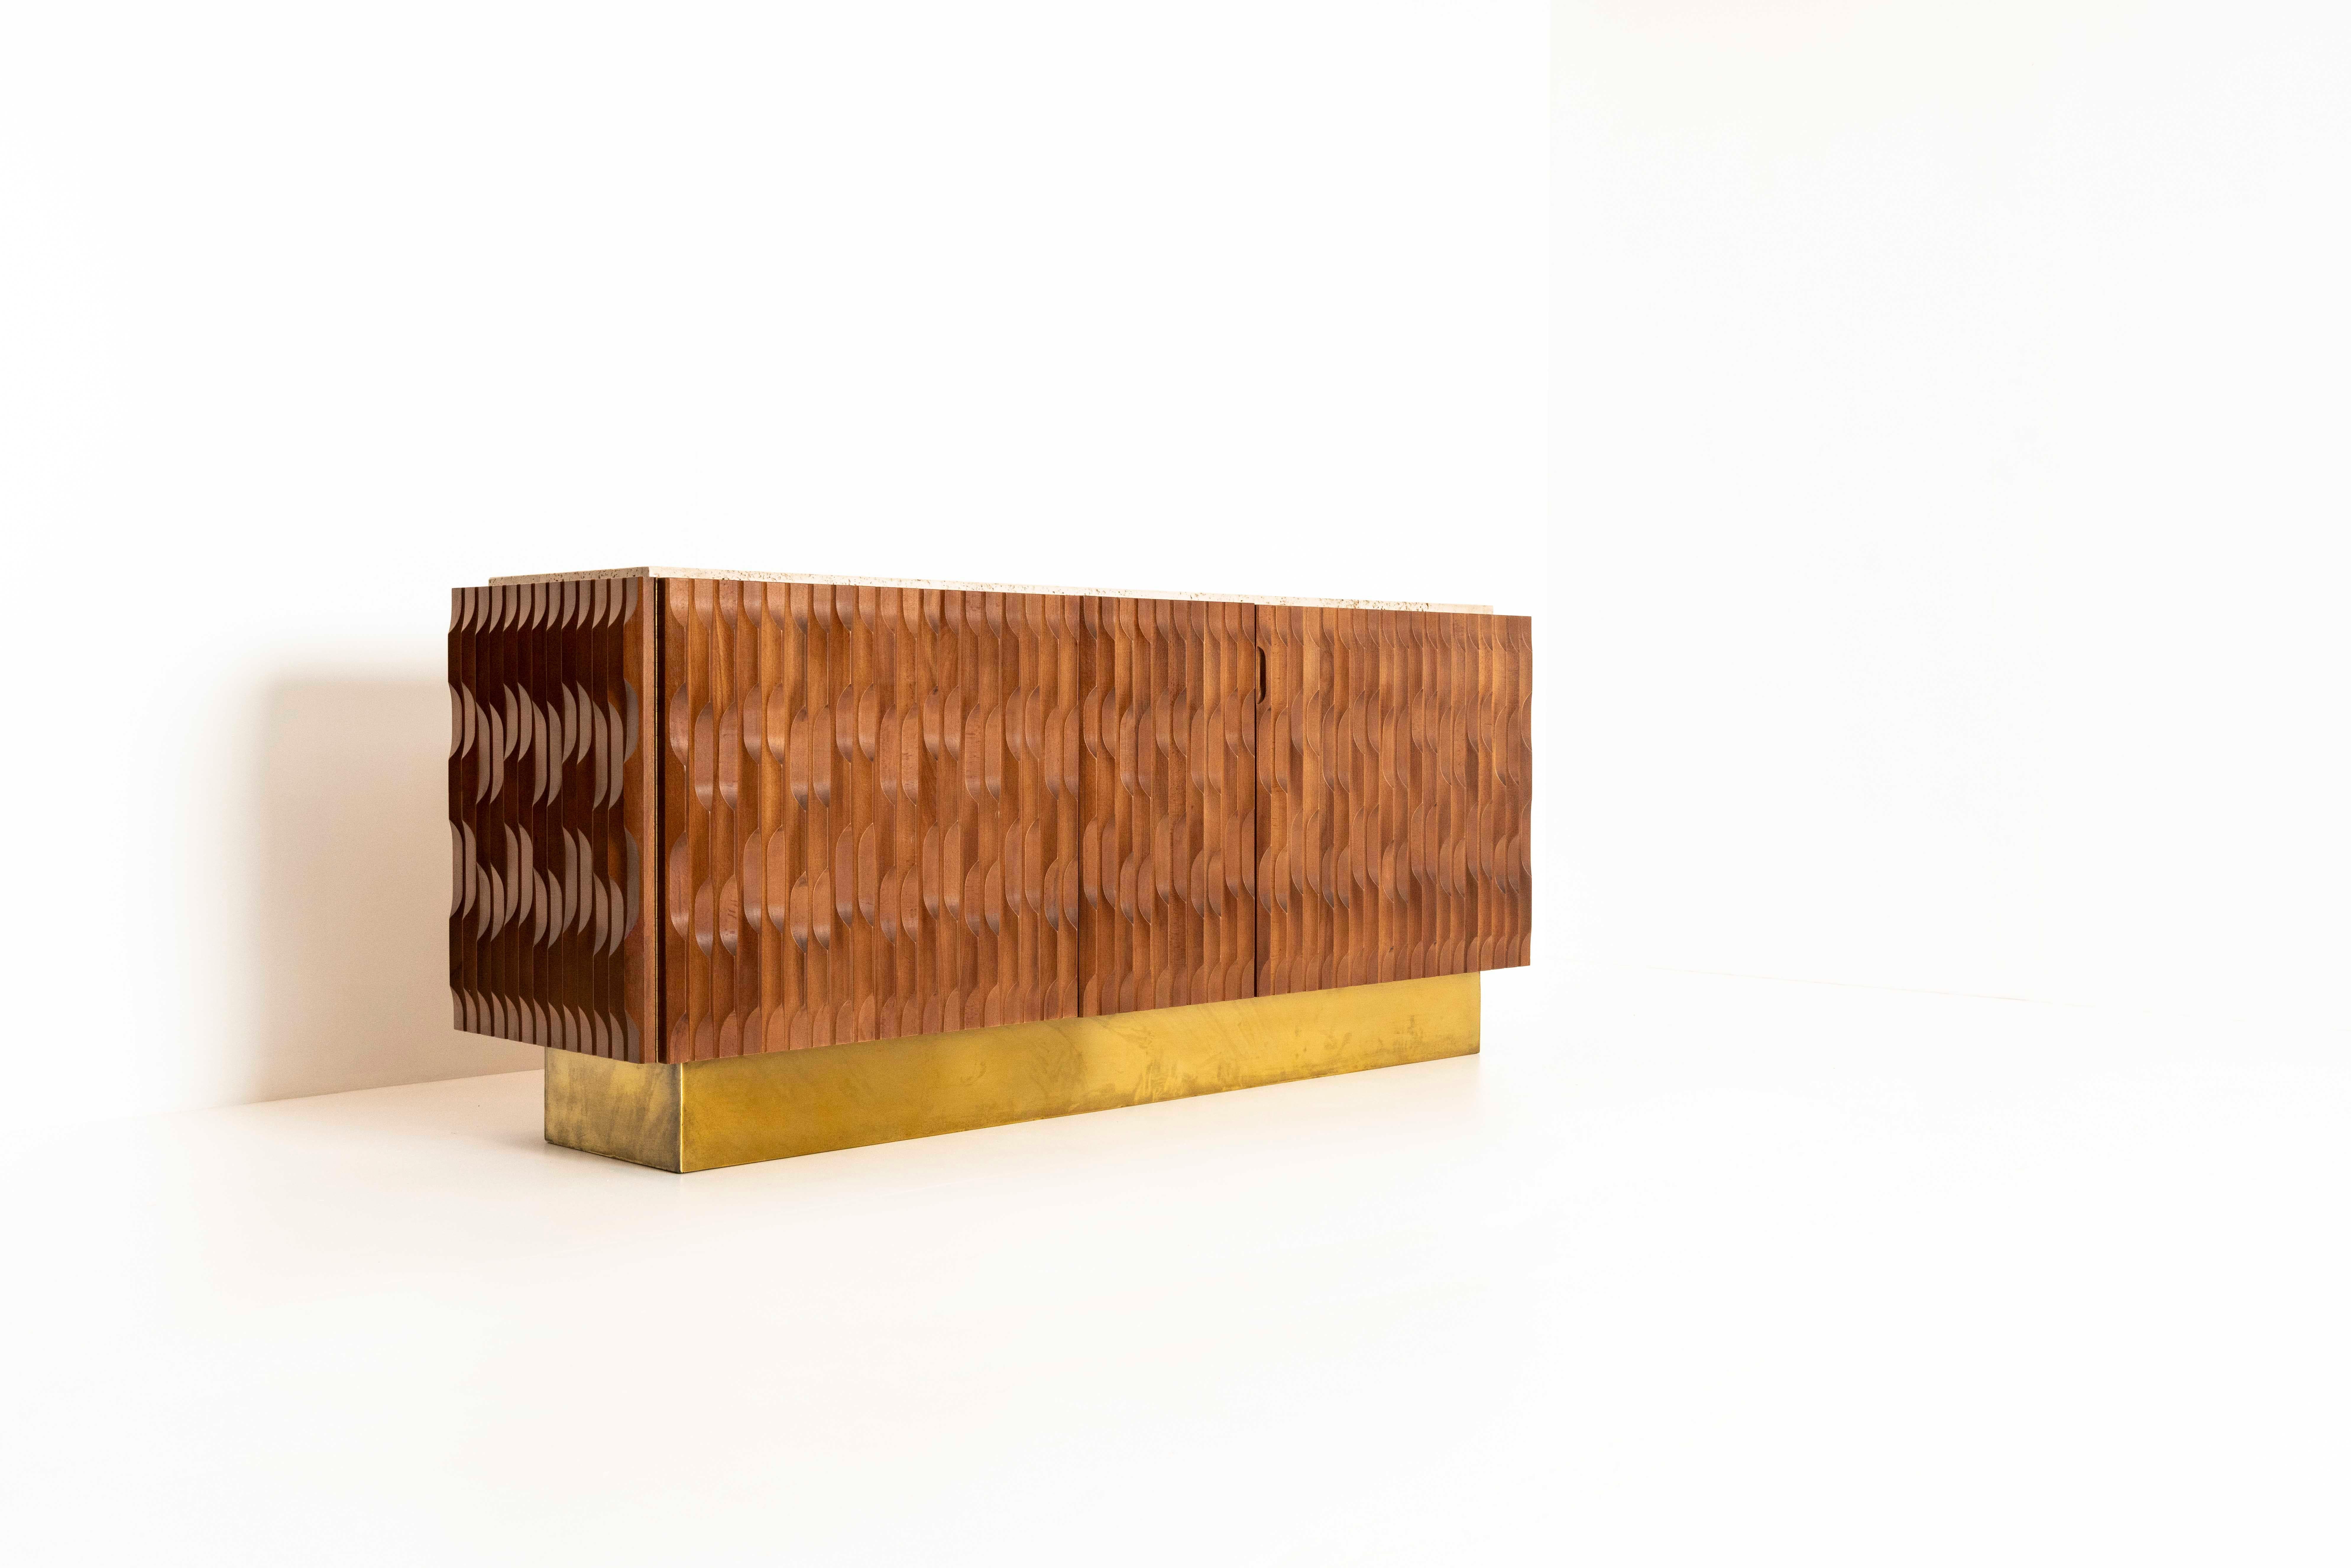 Absolut atemberaubendes italienisches brutalistisches Sideboard mit Holz, Messing und Travertin. Das Holz ist wunderschön in 'Wellenformen' gestaltet. Die Platte ist aus Travertin gefertigt. Es gibt einen Sockel aus Messing, der höchstwahrscheinlich